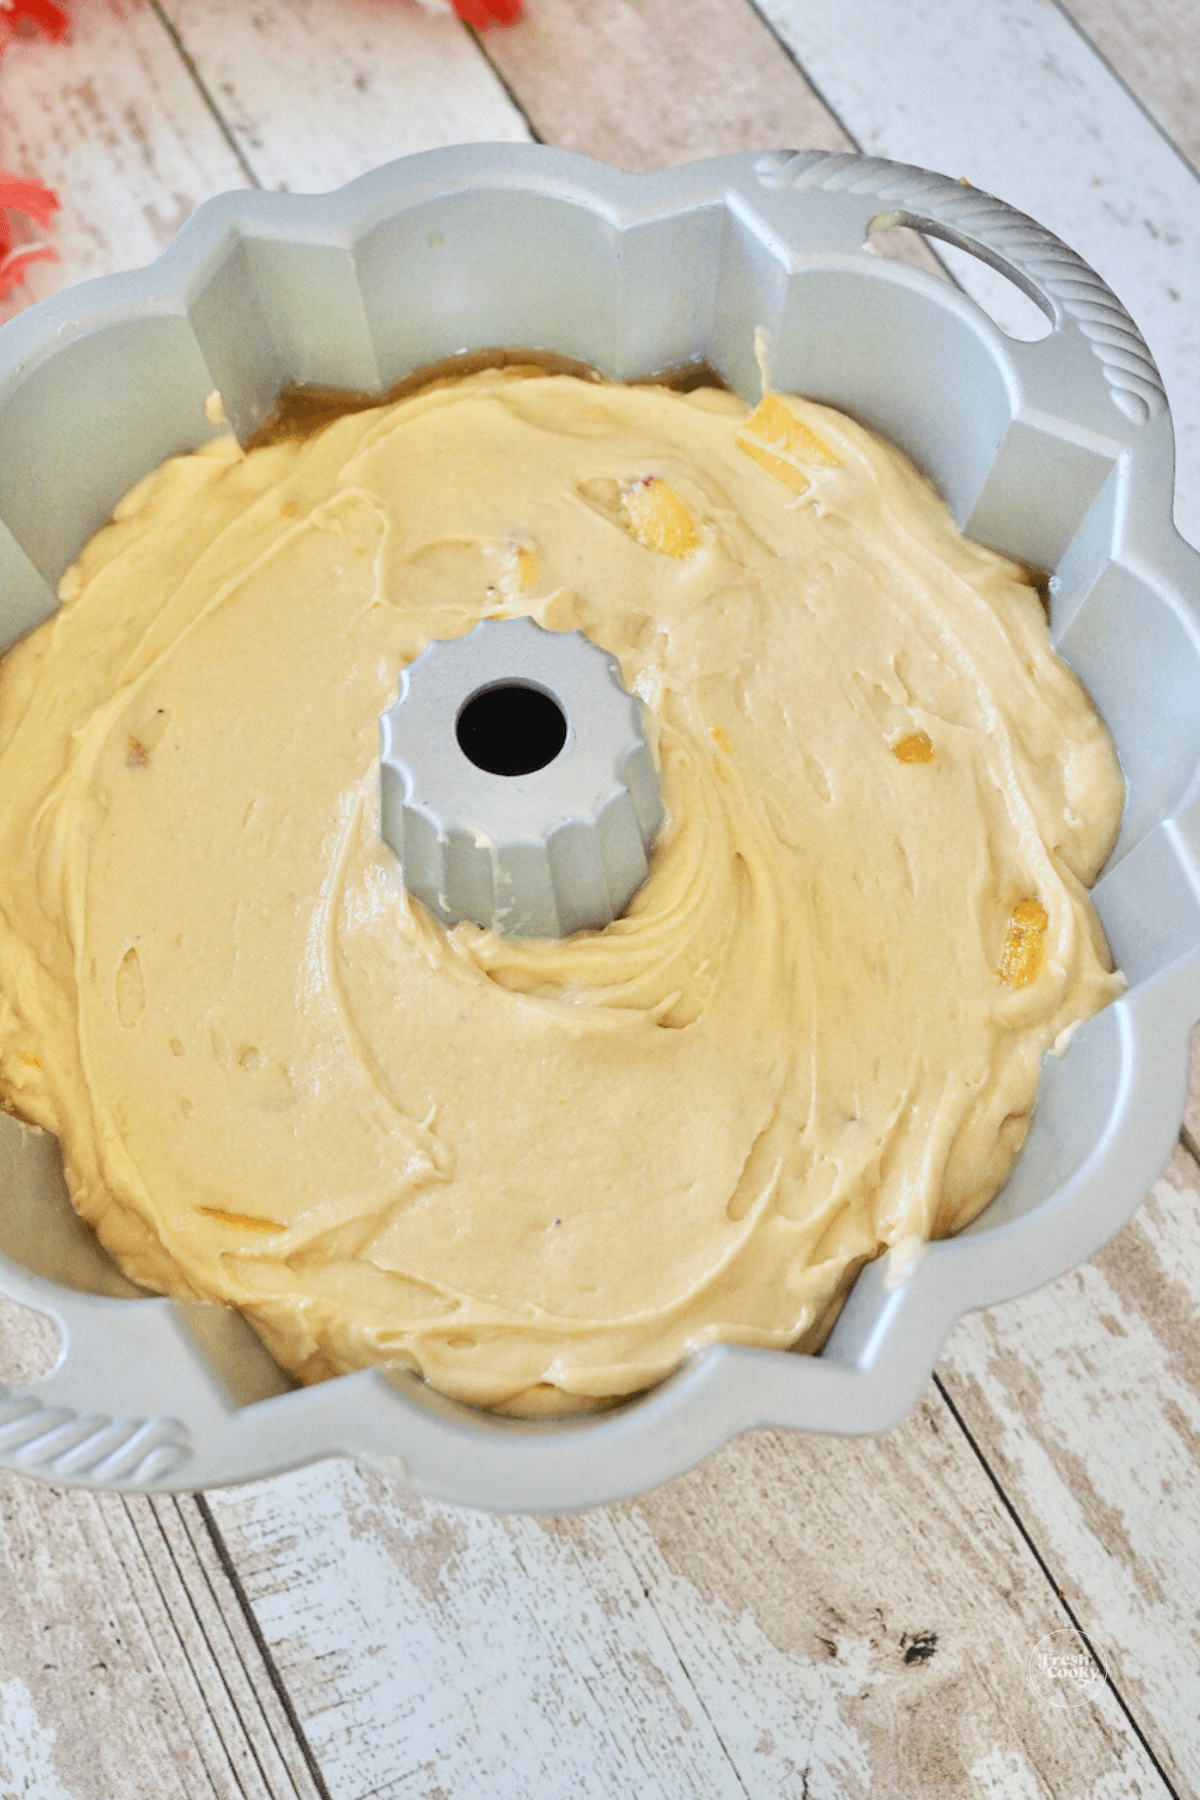 Smoothed cake batter in bundt pan. 